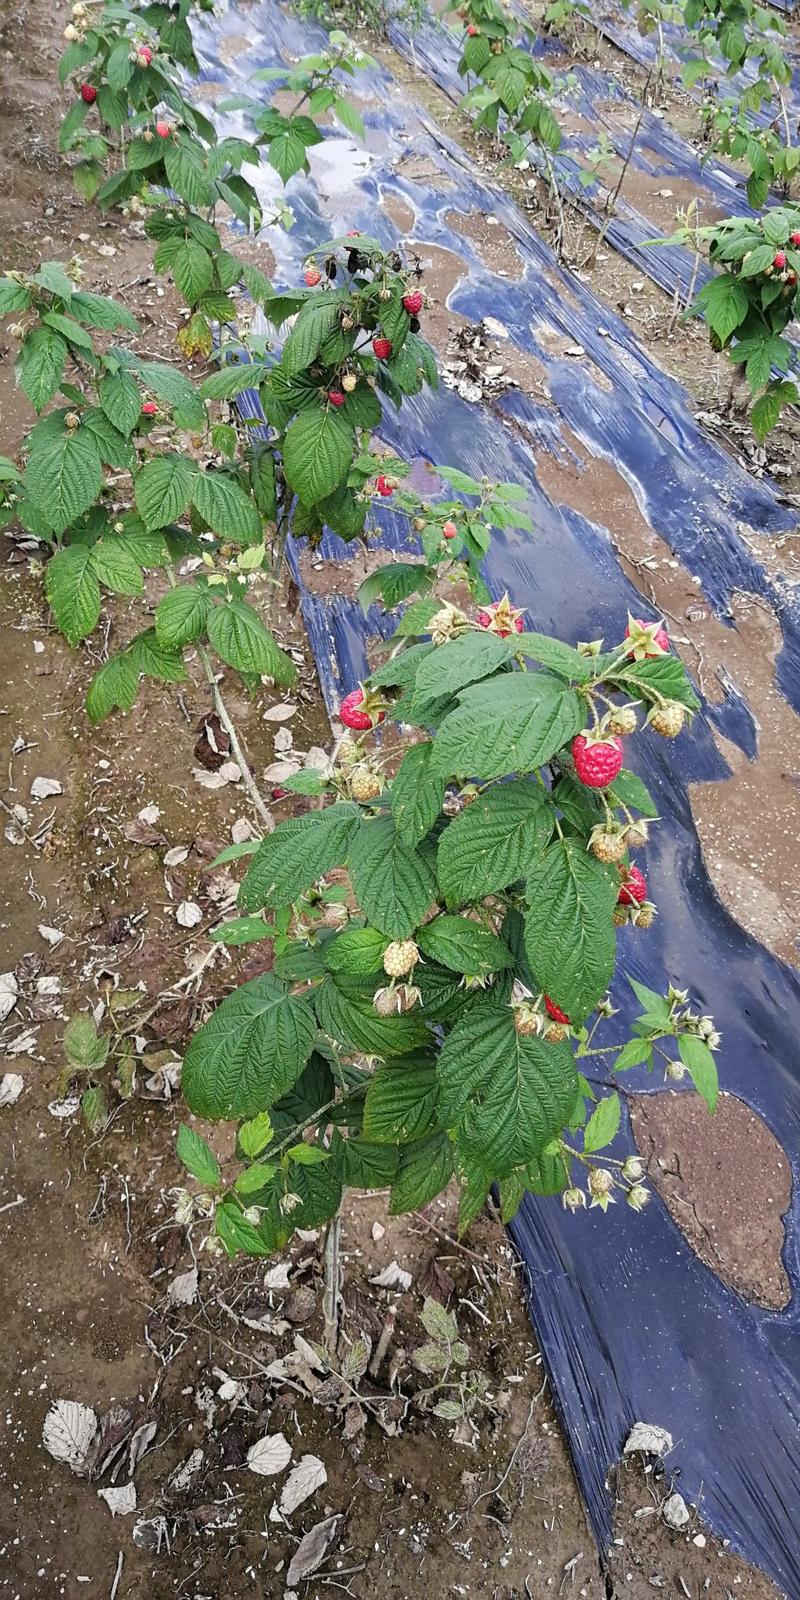 树莓苗红树莓苗大果型双季红树莓苗南方北方盆栽地栽苗